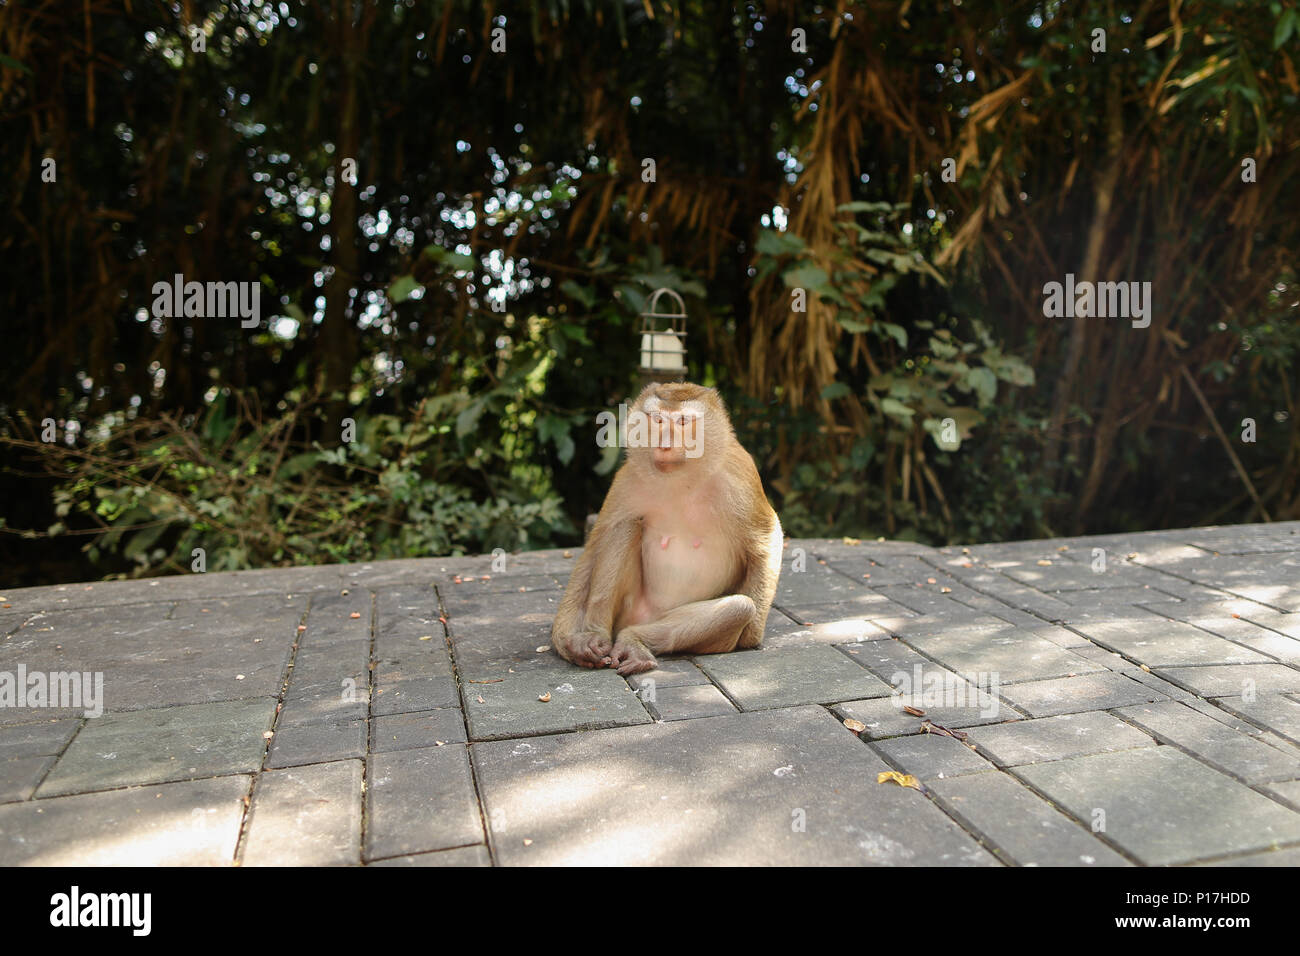 Macaco assis dans un parc, arbres en arrière-plan. Banque D'Images